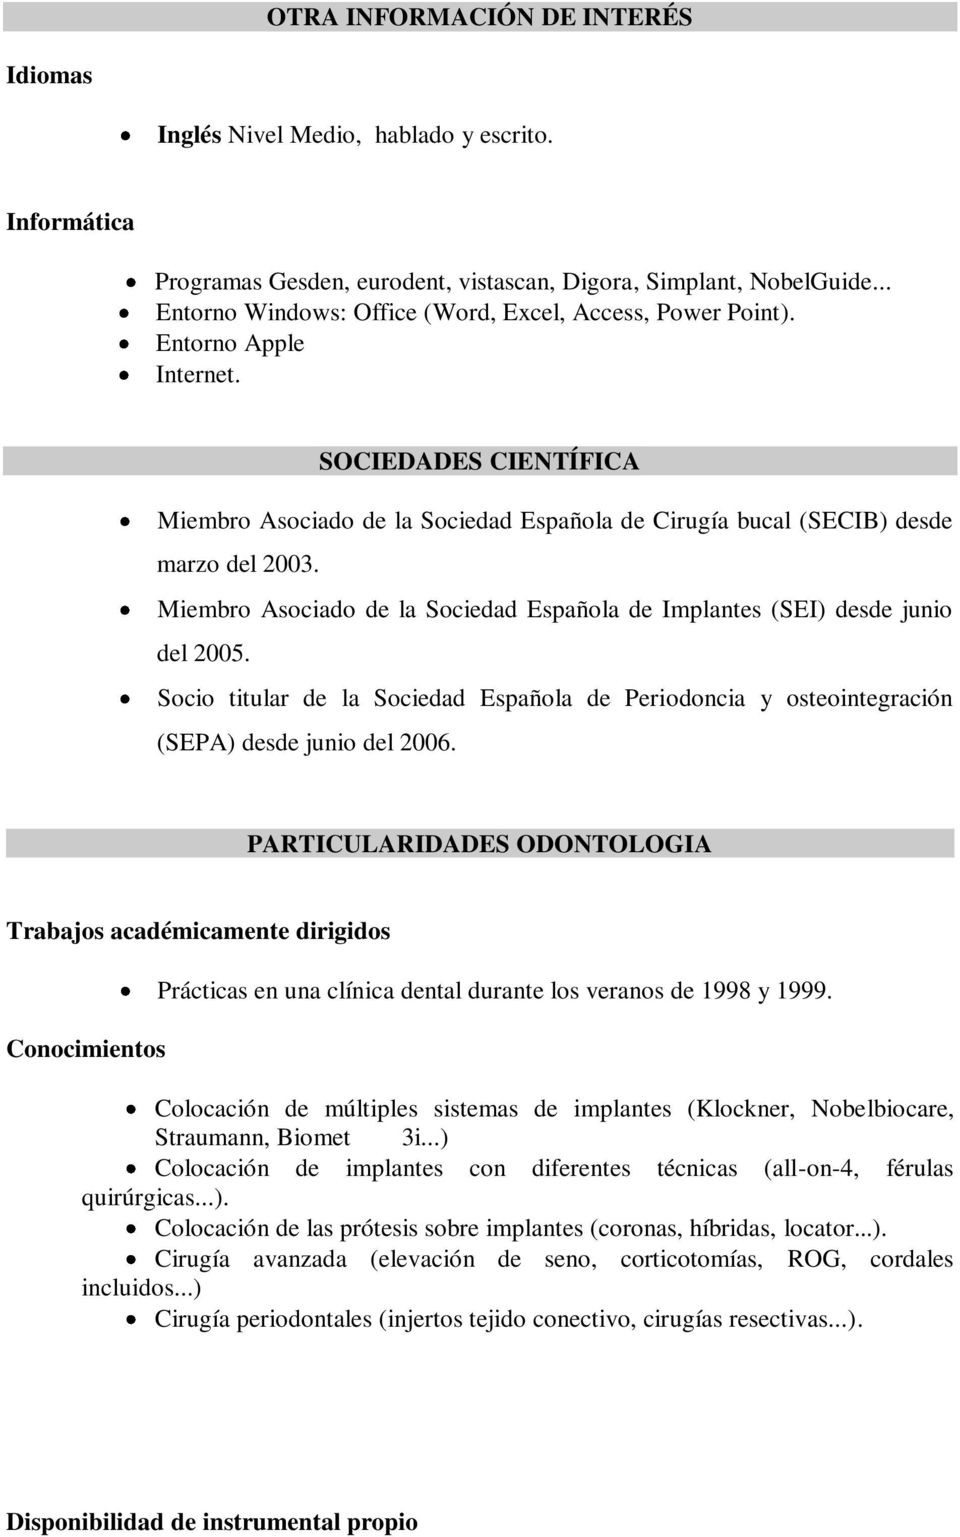 Miembro Asociado de la Sociedad Española de Implantes (SEI) desde junio del 2005. Socio titular de la Sociedad Española de Periodoncia y osteointegración (SEPA) desde junio del 2006.